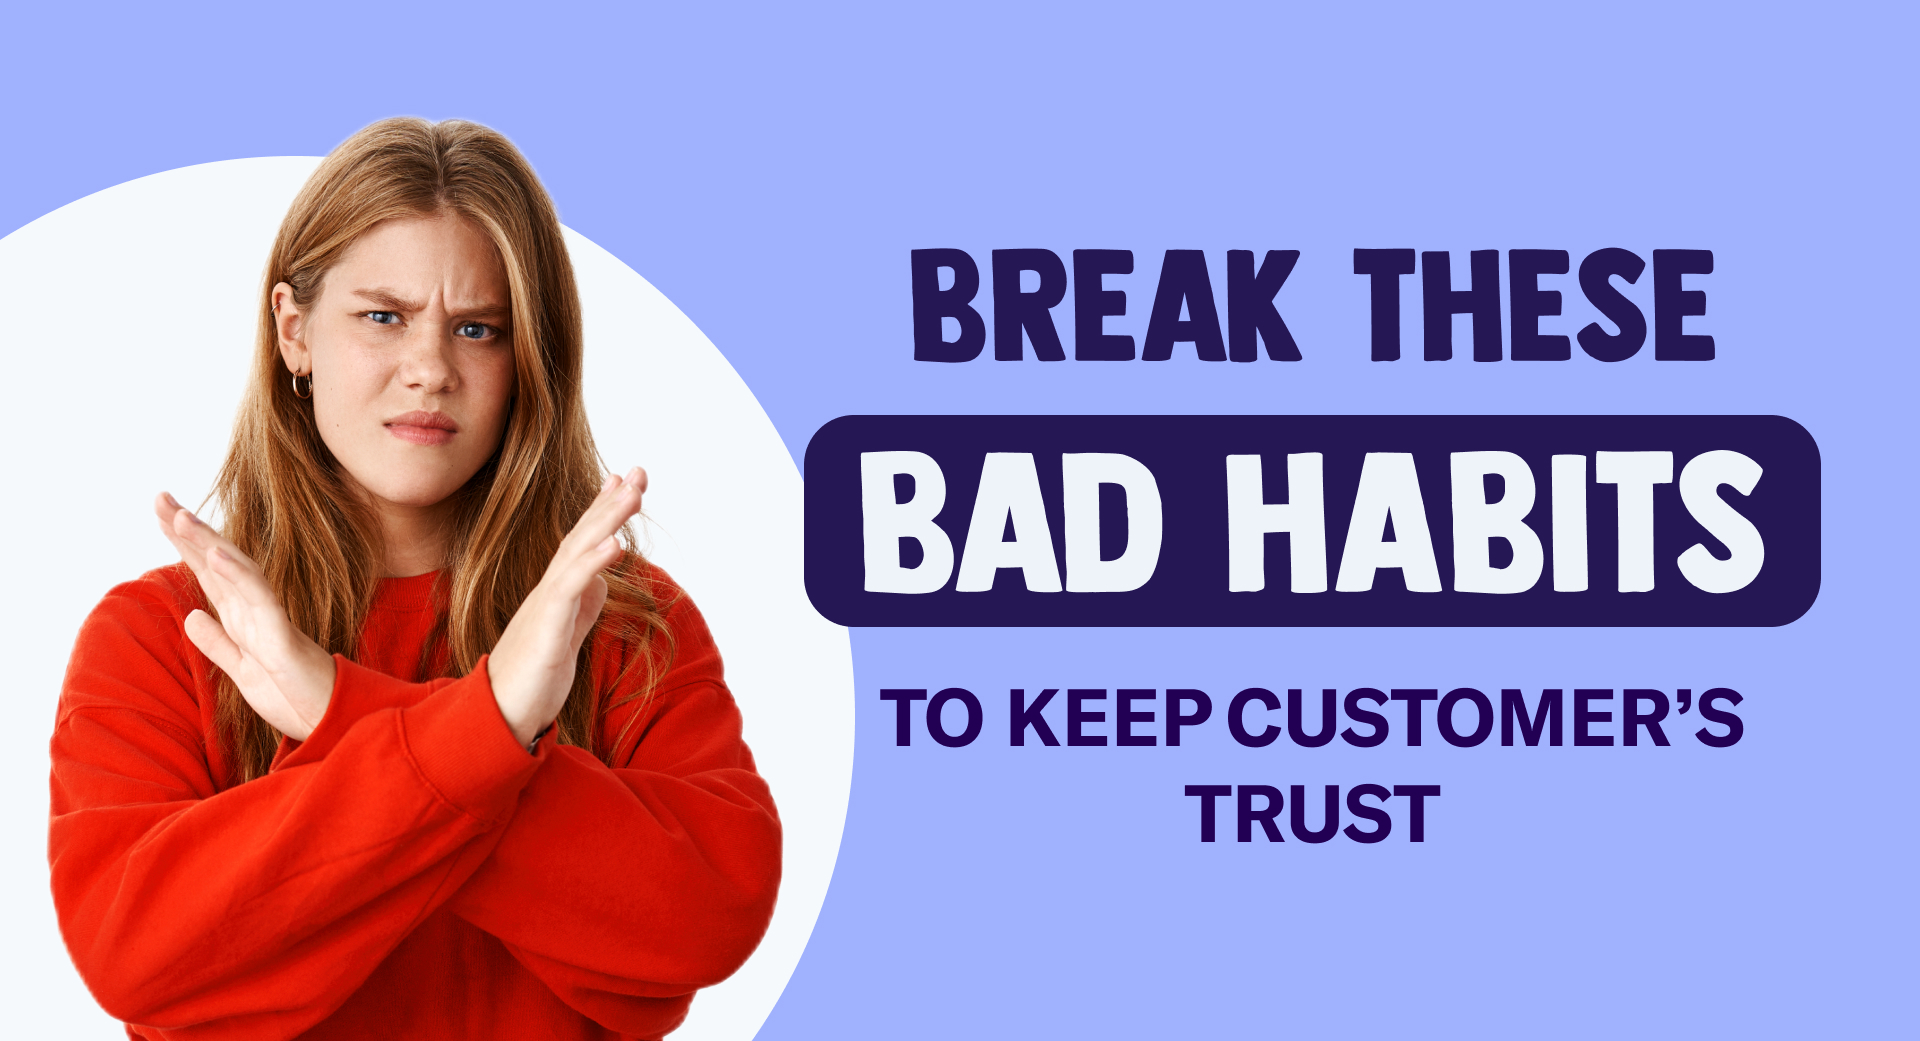 Rompa estos malos hábitos para mantener la confianza del cliente